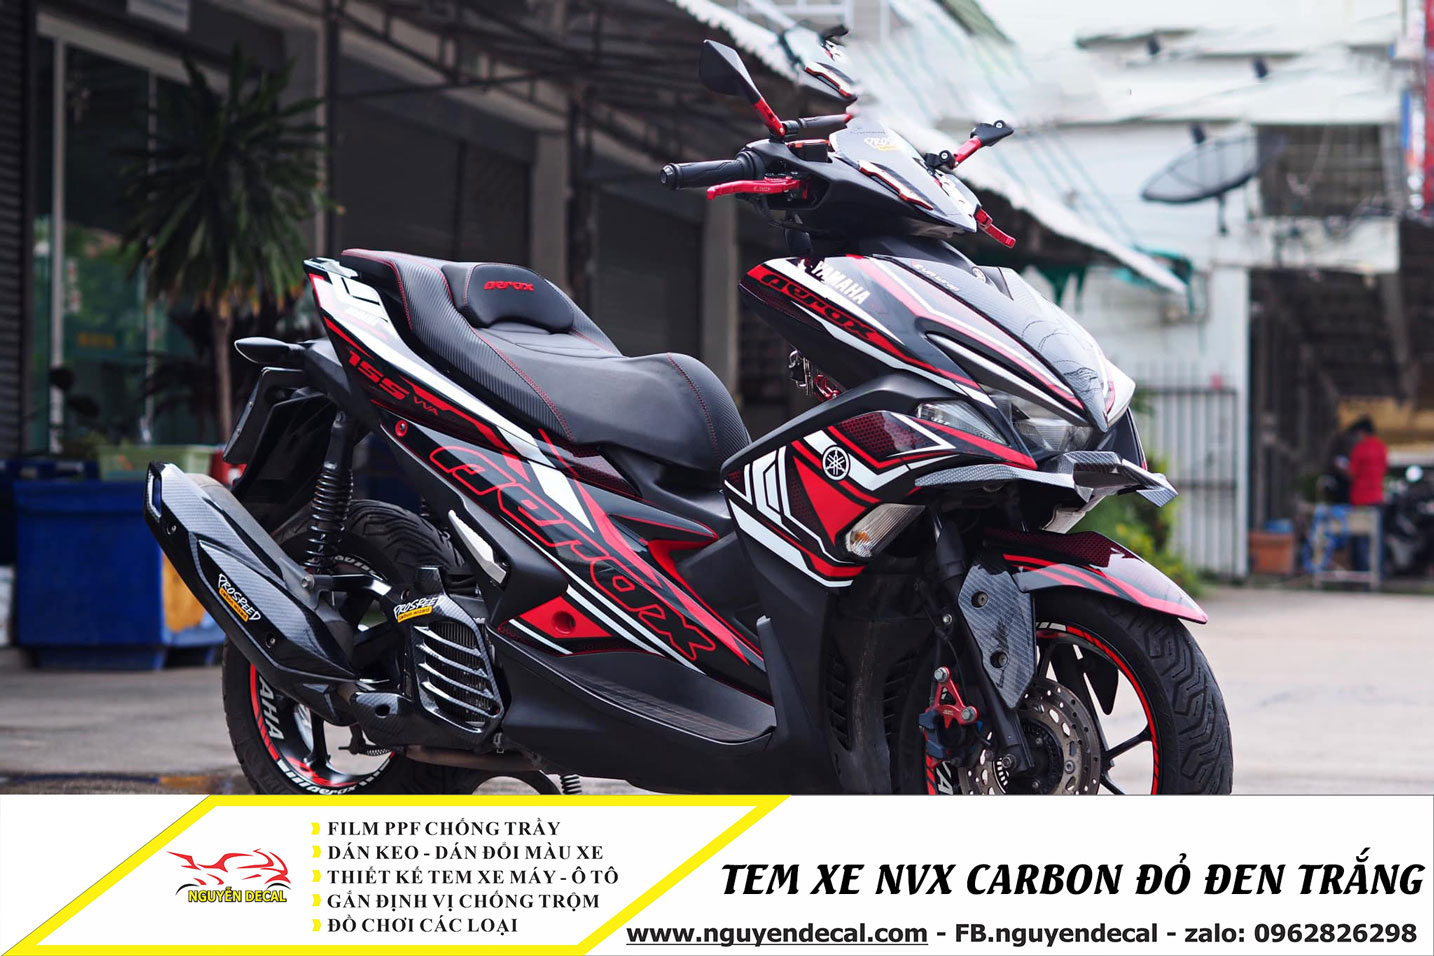 Tem xe NVX carbon đỏ đen trắng - Nguyễn Decal - Chuyên Dán Keo Xe Design Tem  Xe Decal Tem Xe Nguyễn Decal